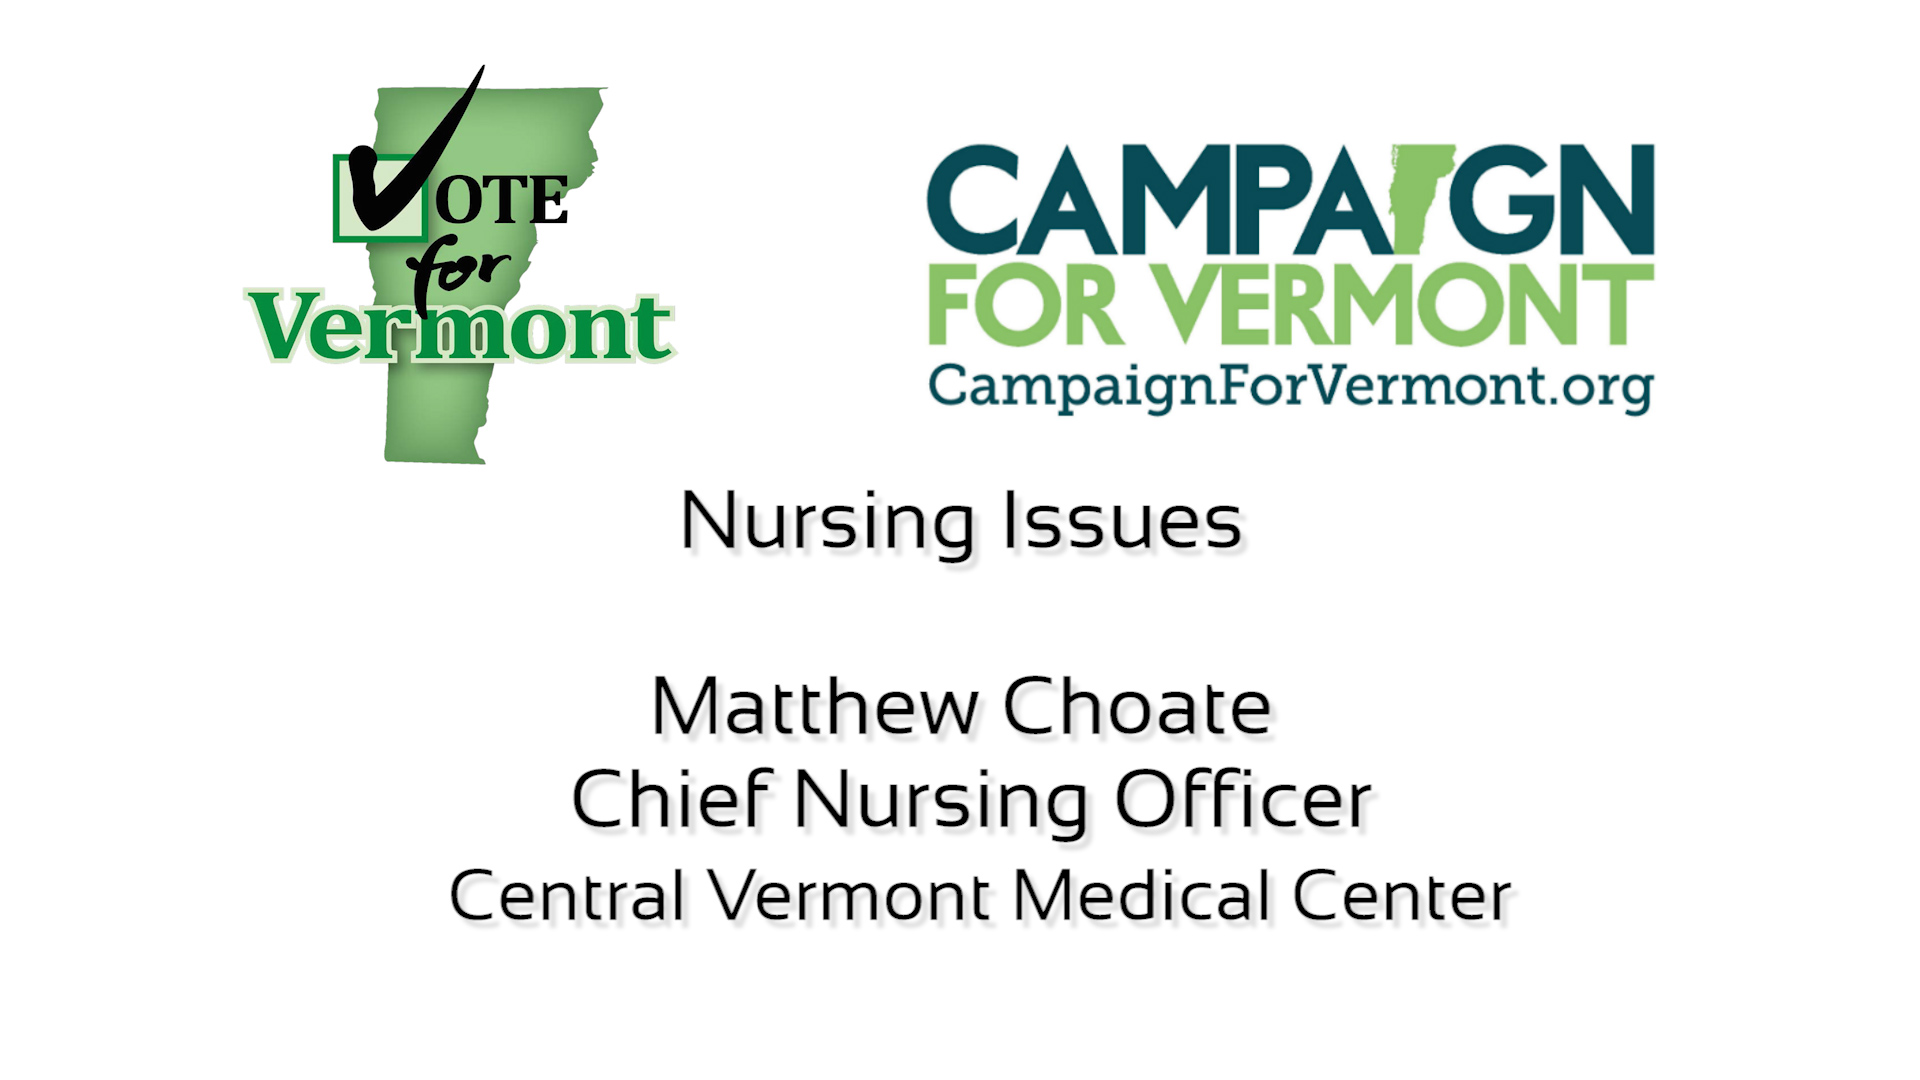 Matthew Choate, Chief Nursing Officer CVMC